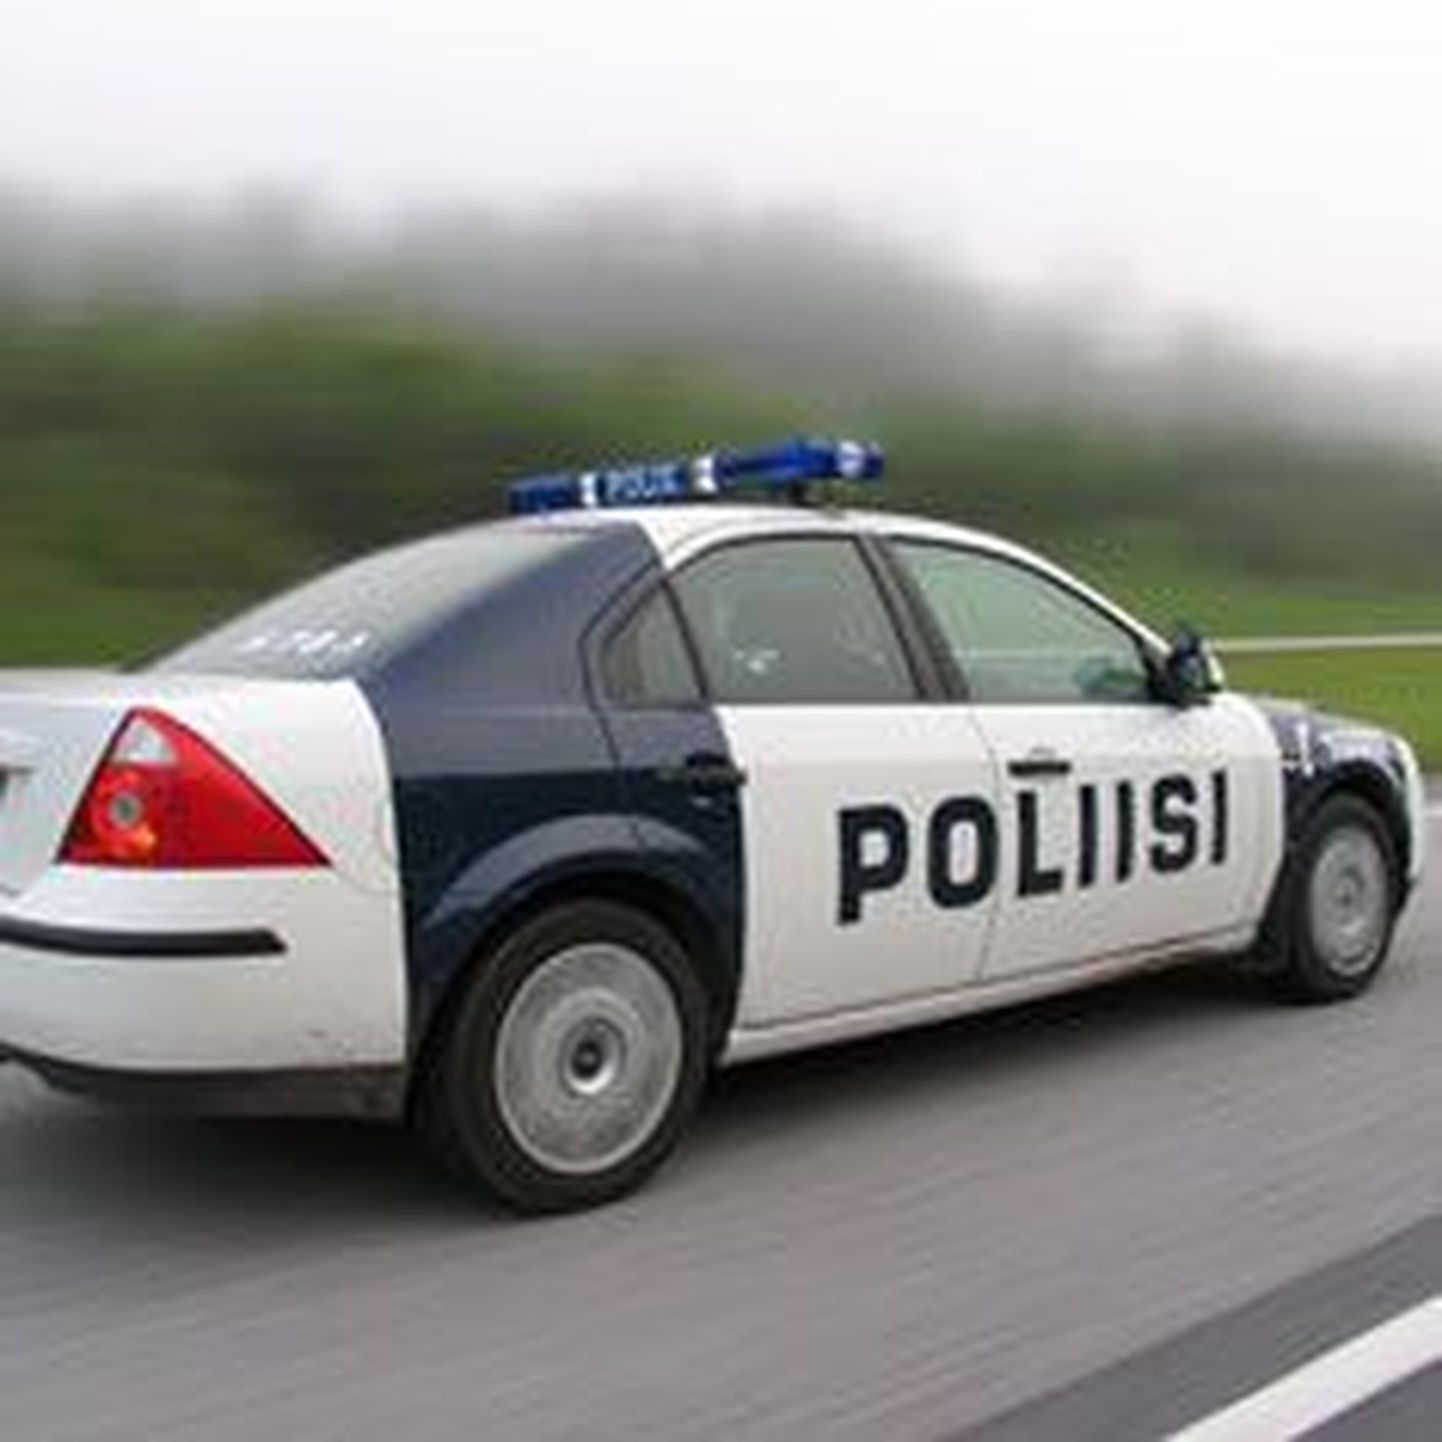 Soome politsei auto.